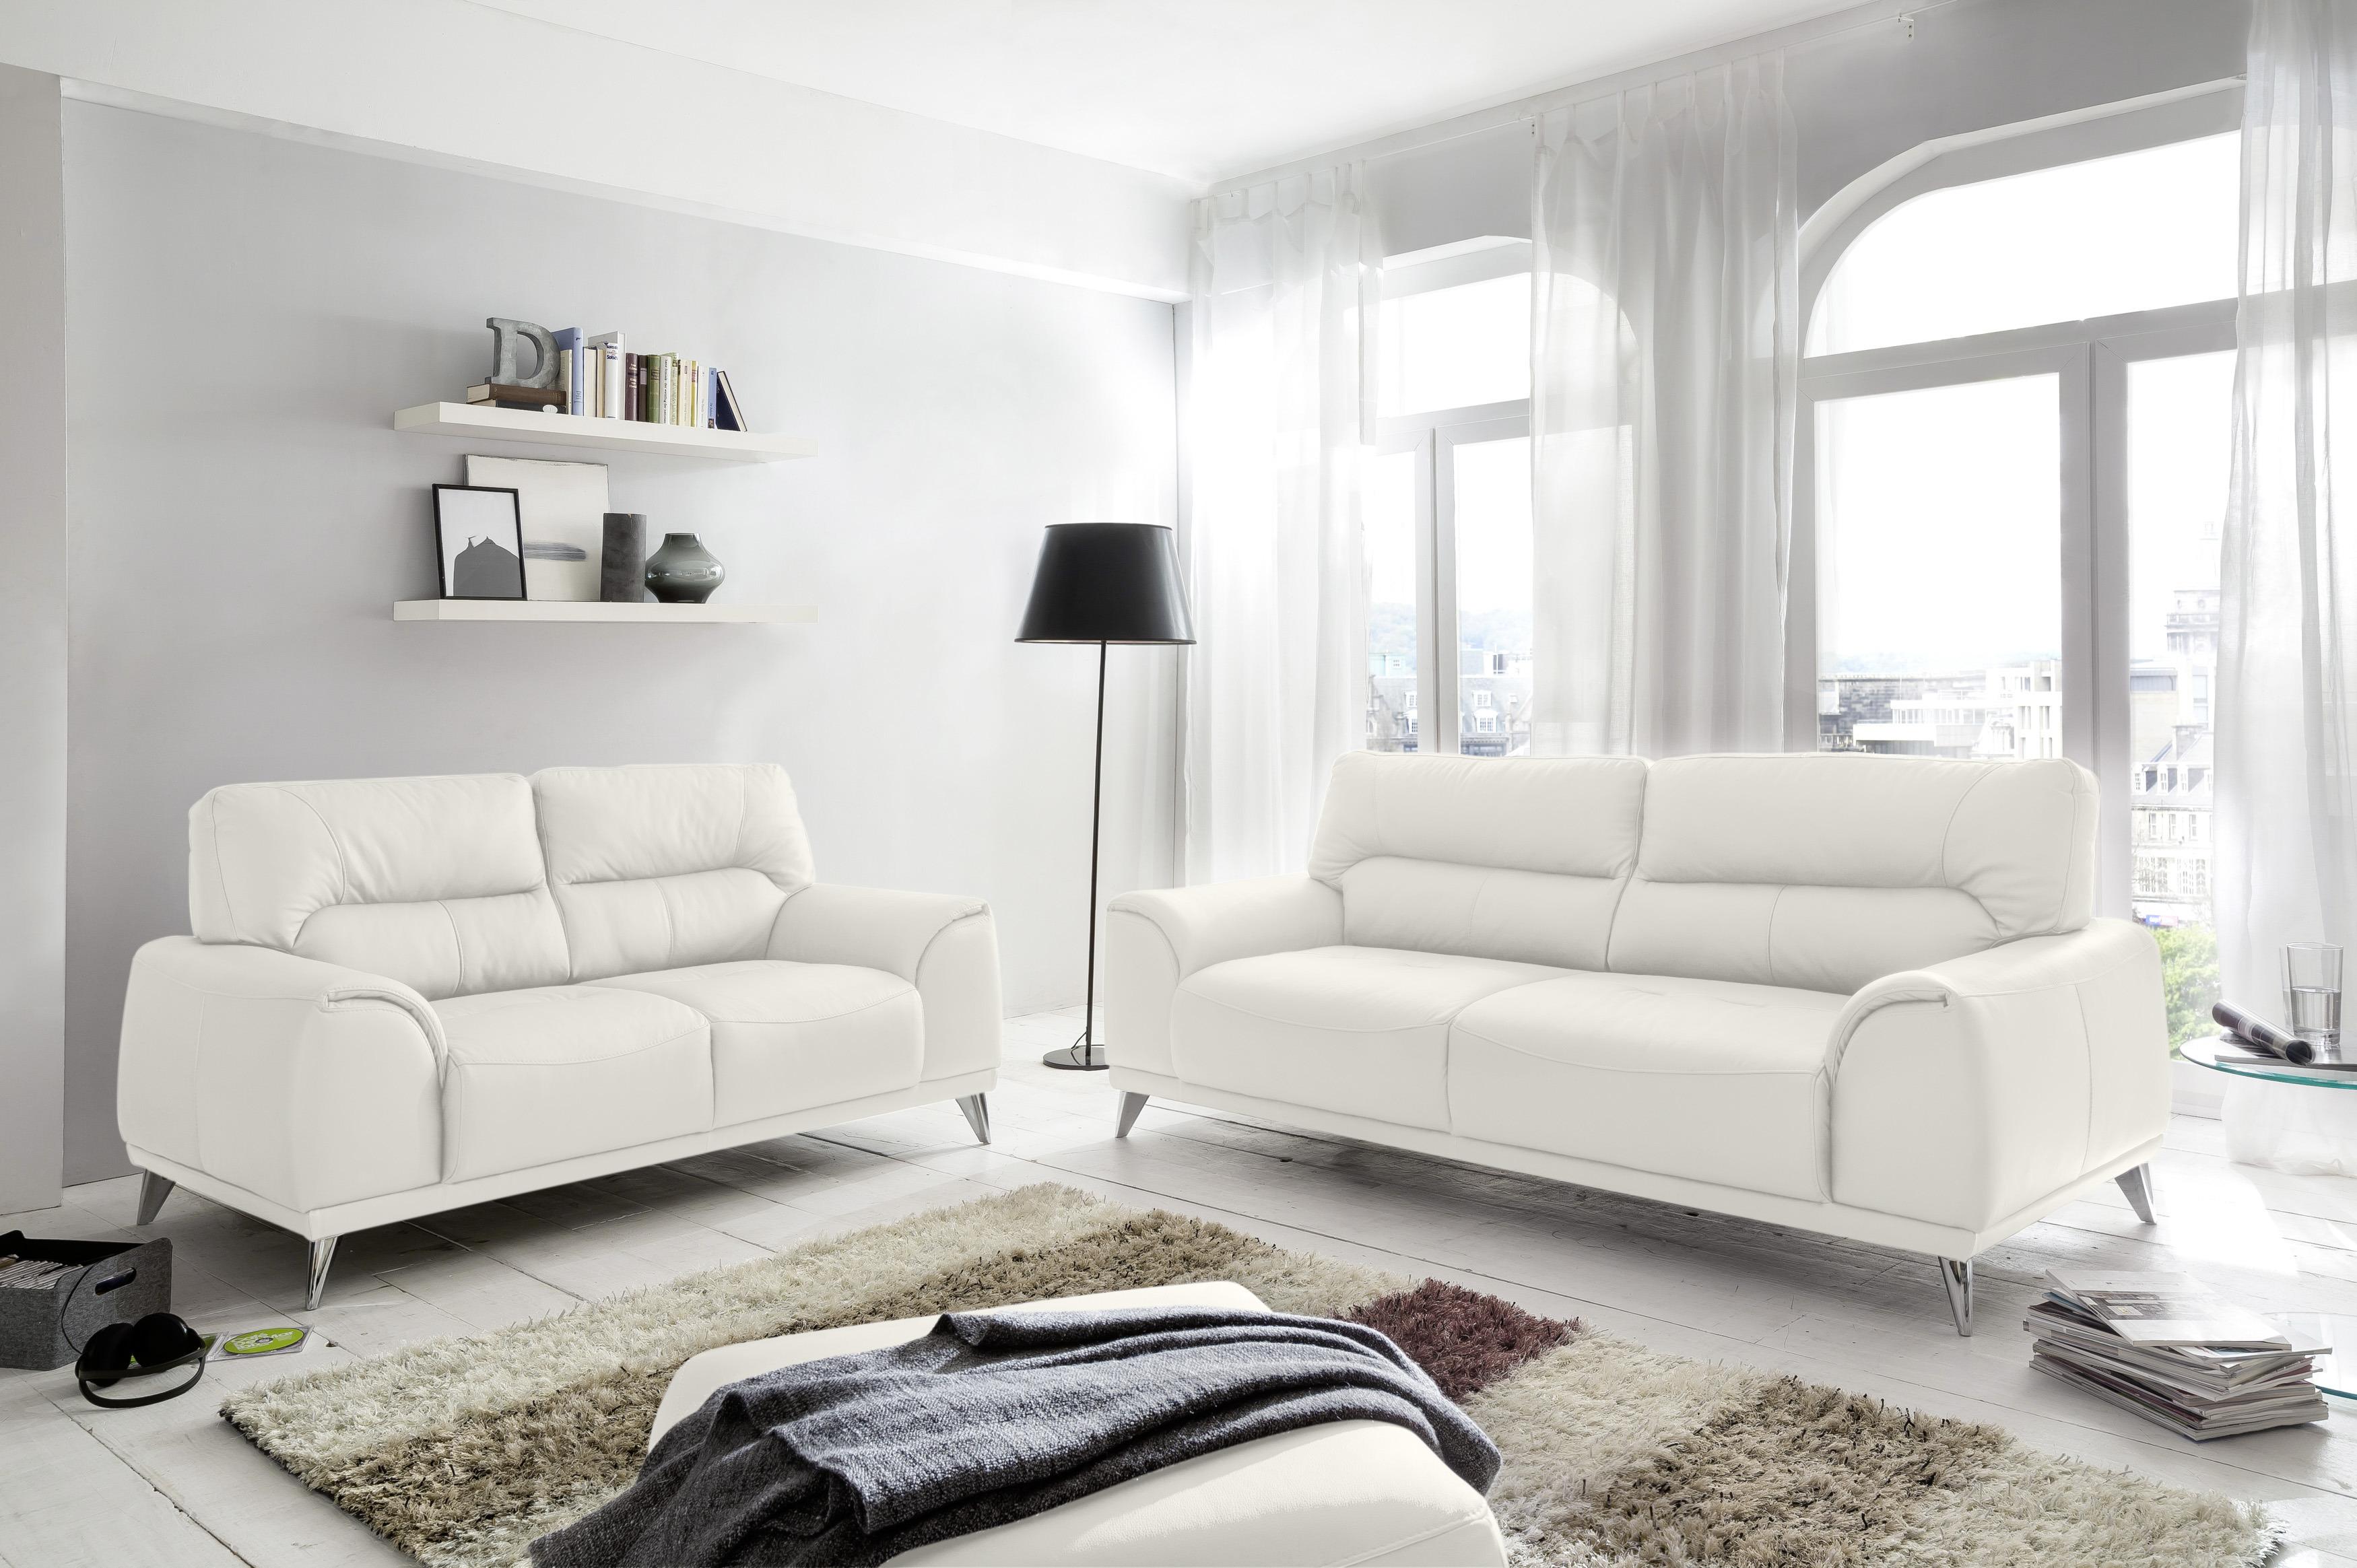 Zweisitzer-Sofa Frisco, Lederlook - Chromfarben/Weiß, MODERN, Textil (166/92/96cm) - MID.YOU